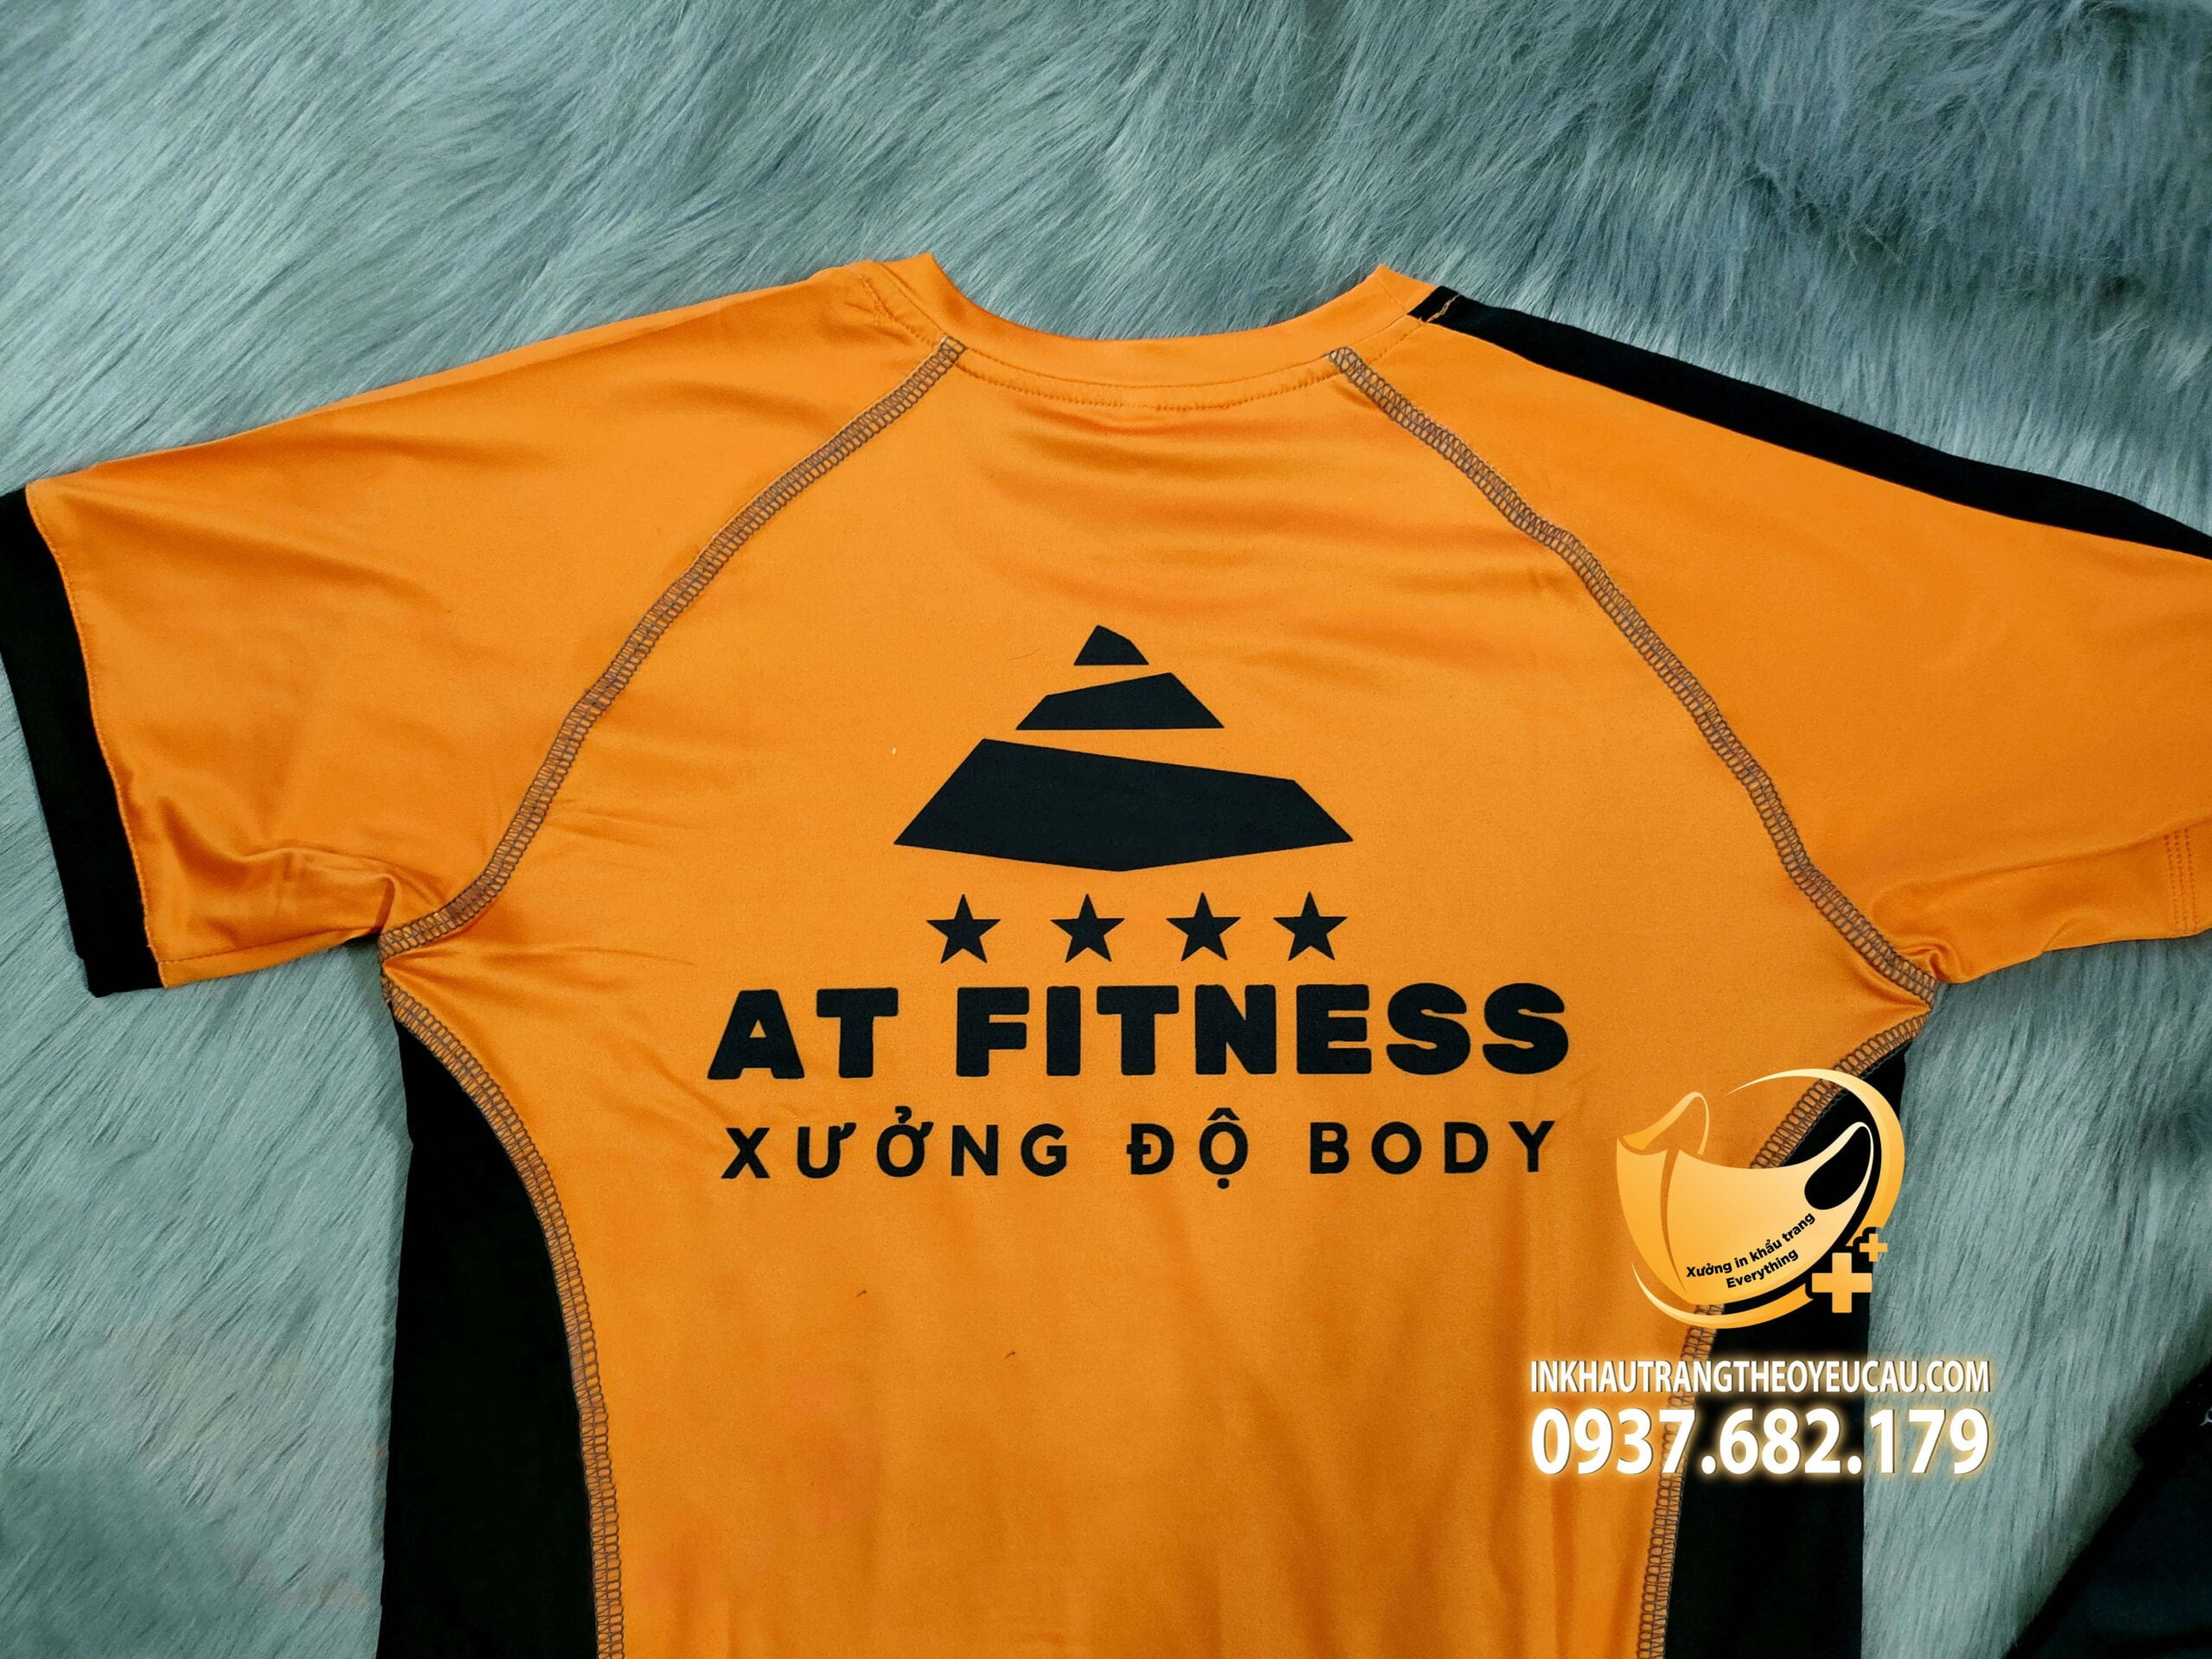 logo sau lưng áp đồng phục PT at fitness xưởng độ body màu cam